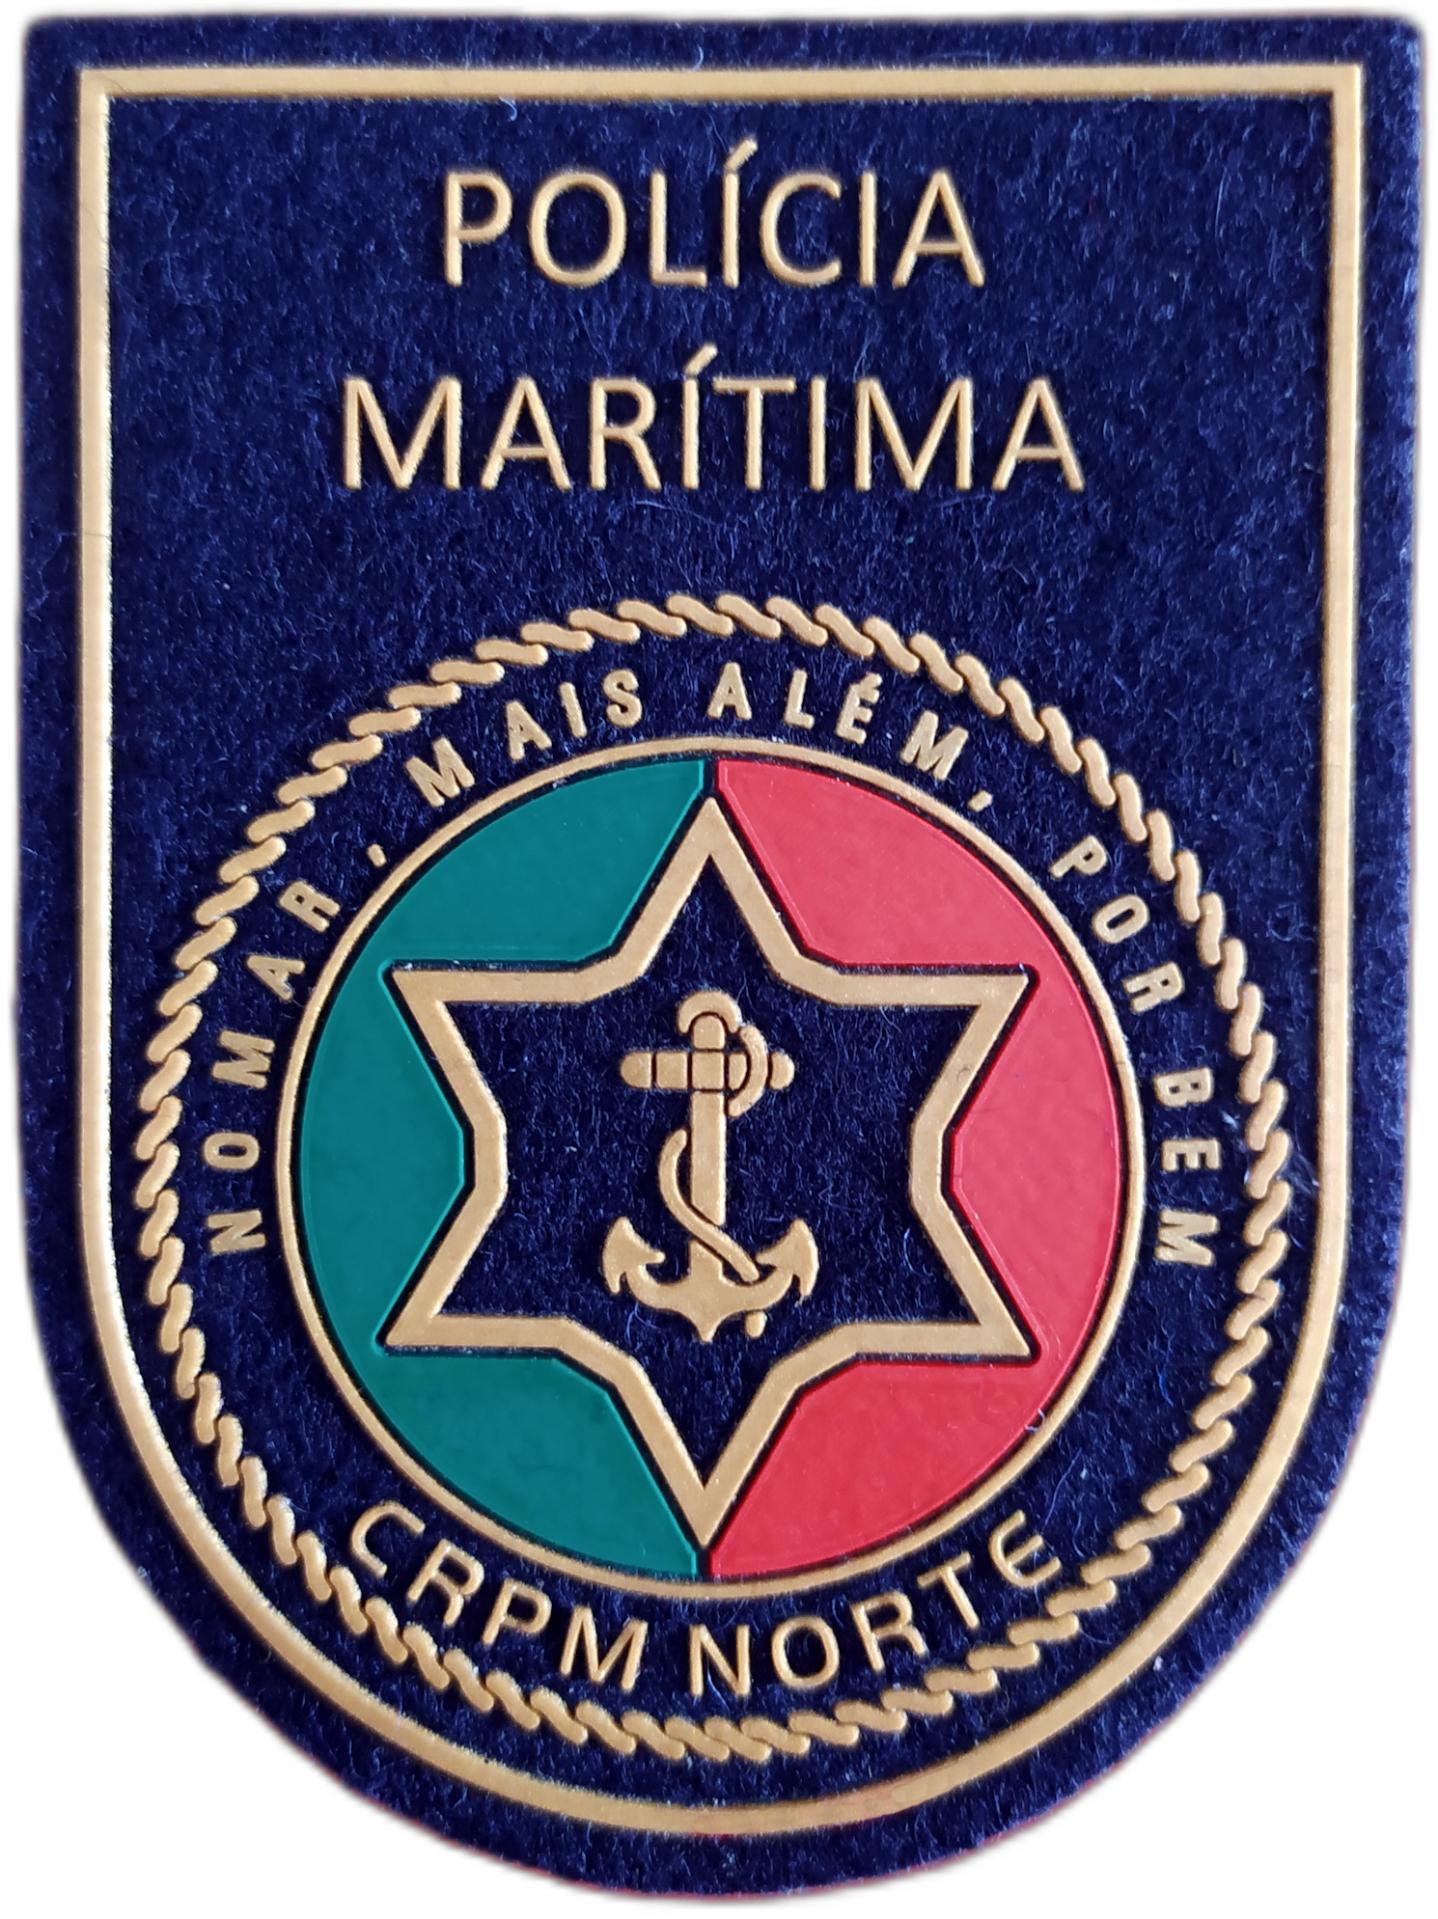 Policía Marítima de Portugal CRPM Norte parche insignia emblema distintivo Sea Police